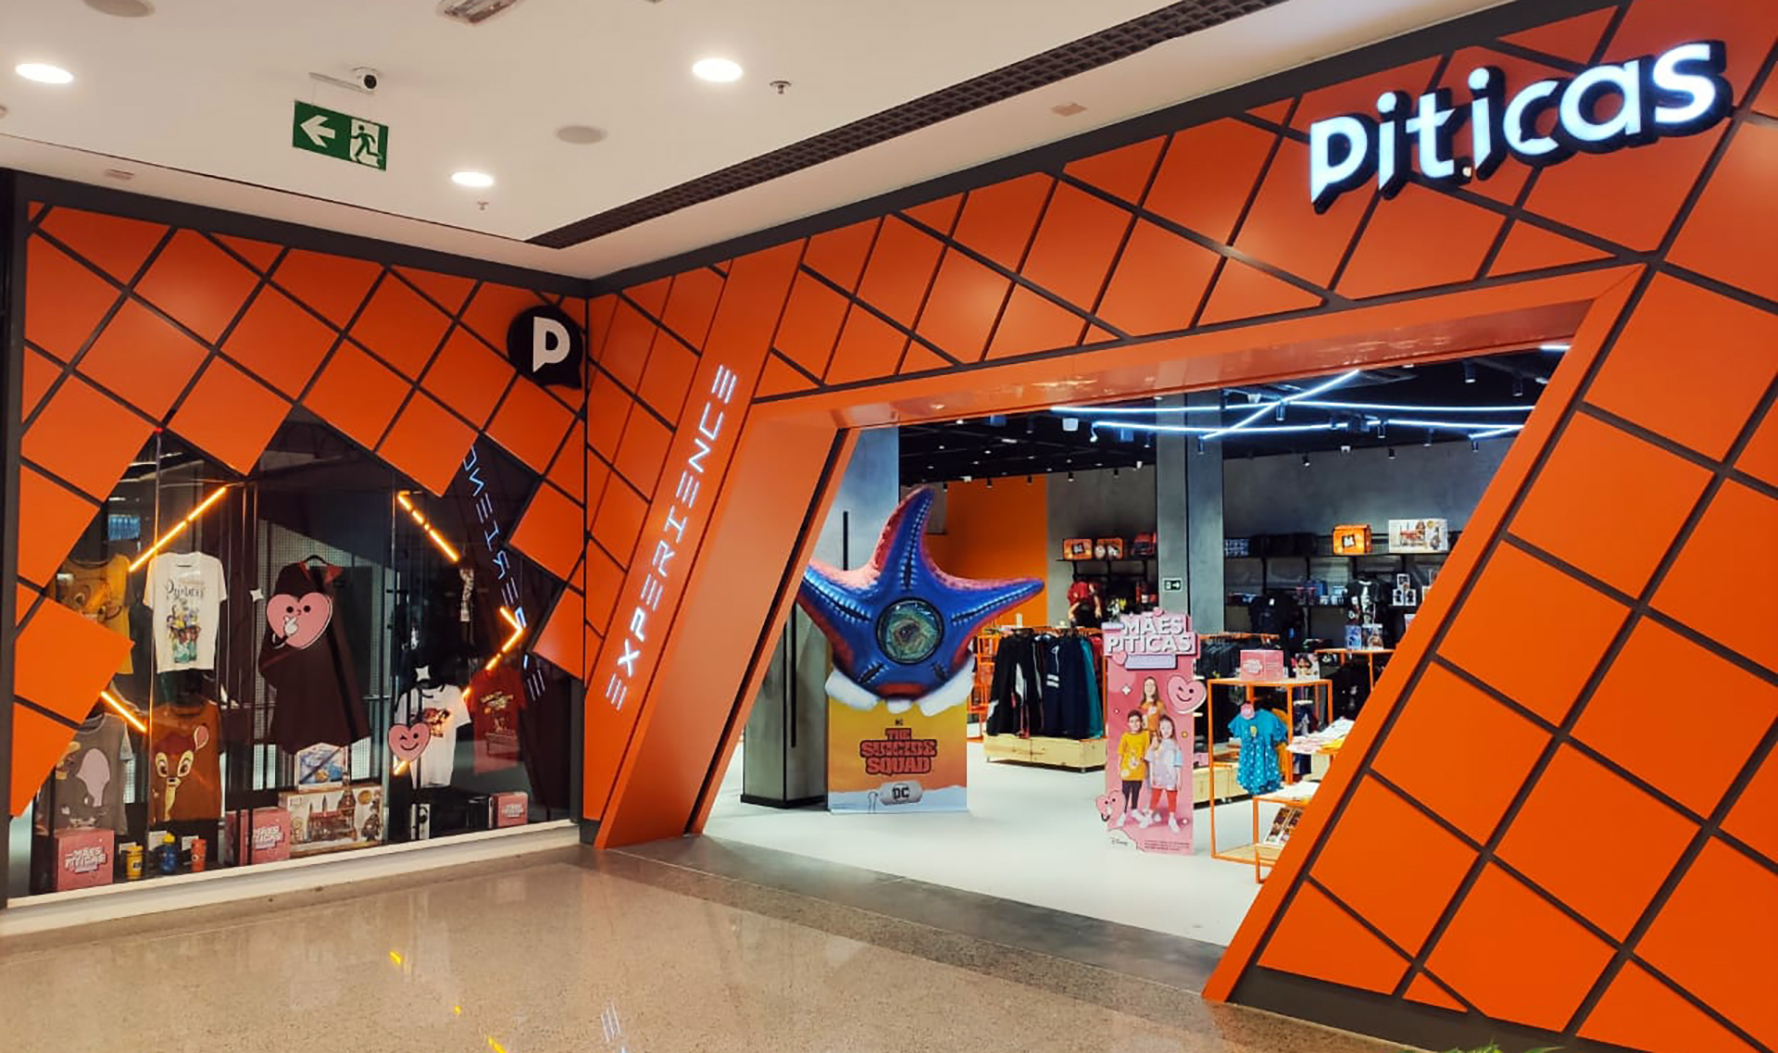 No momento você está vendo Com loja conceito, Piticas Experience chega ao DF Plaza Shopping